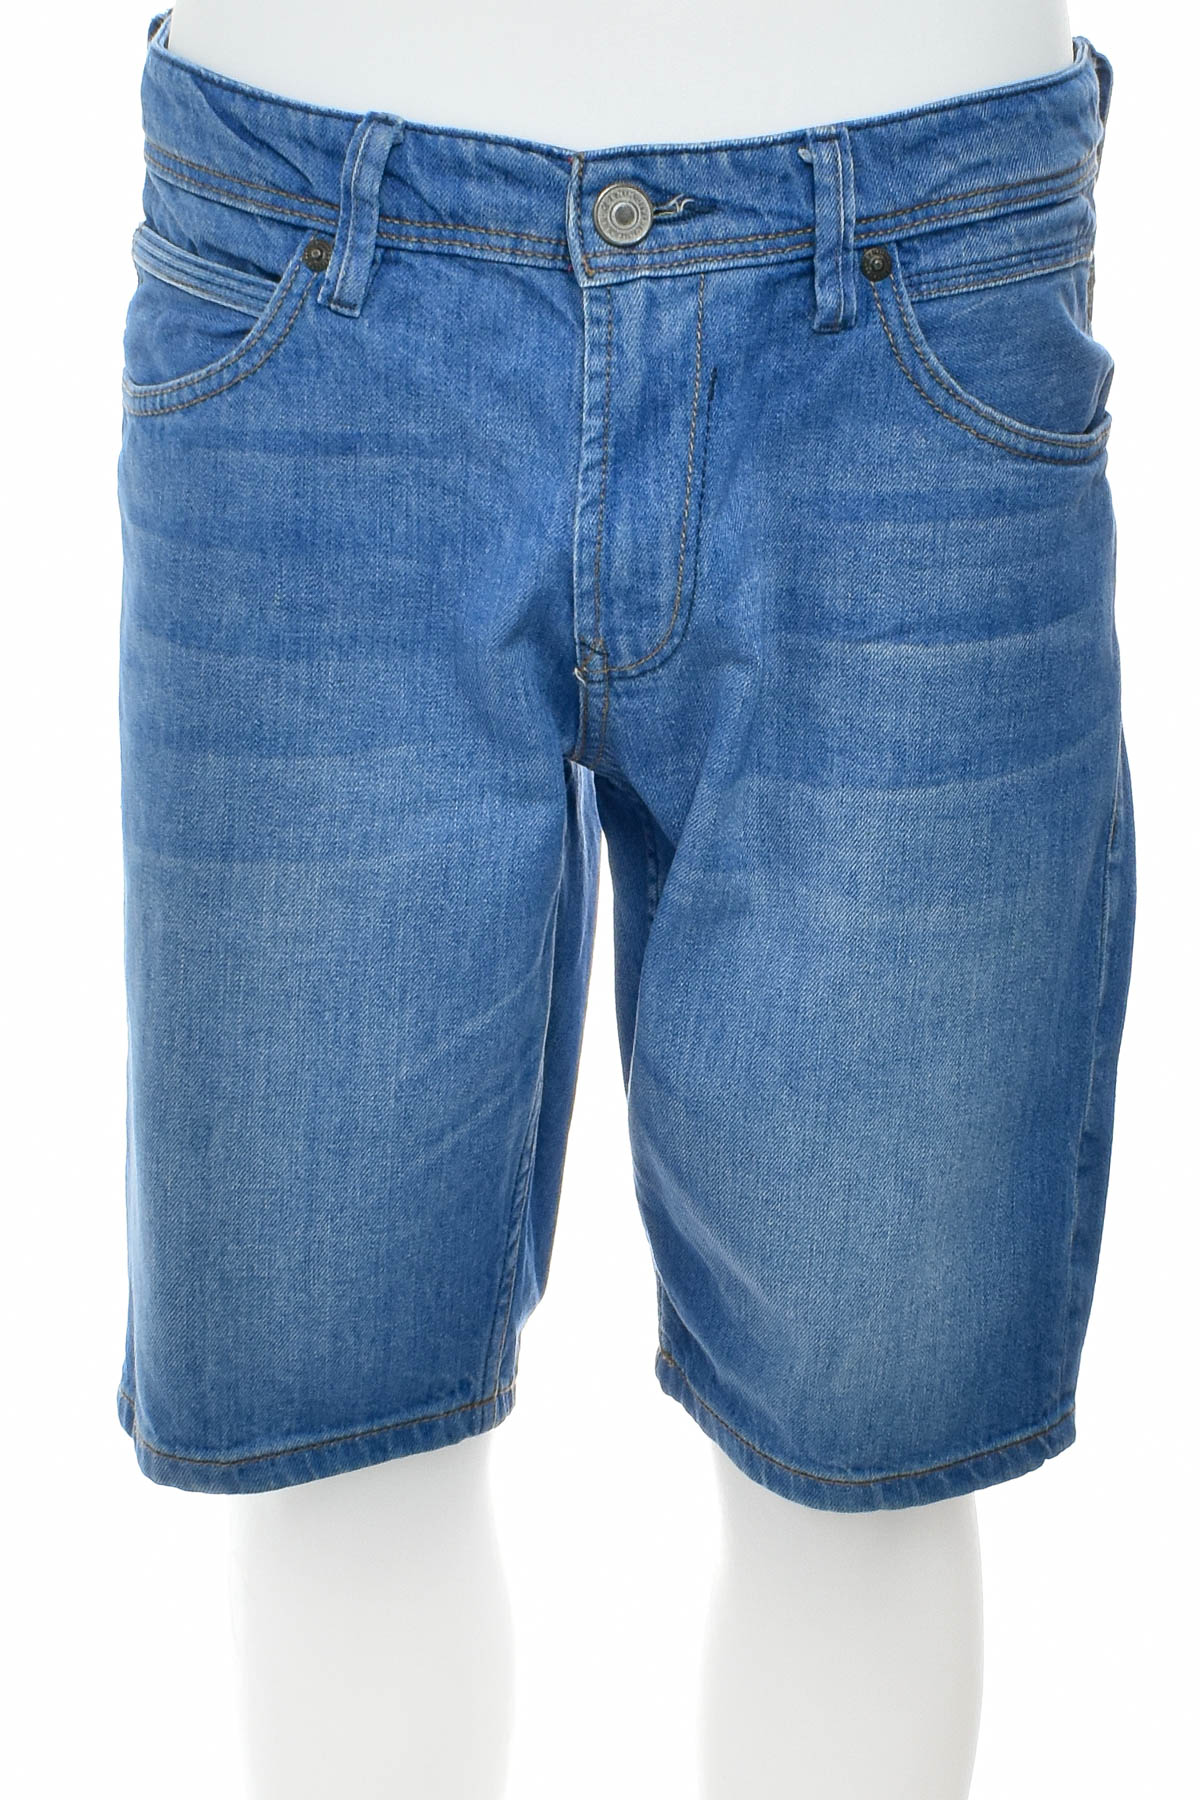 Men's shorts - TOM TAILOR Denim - 0